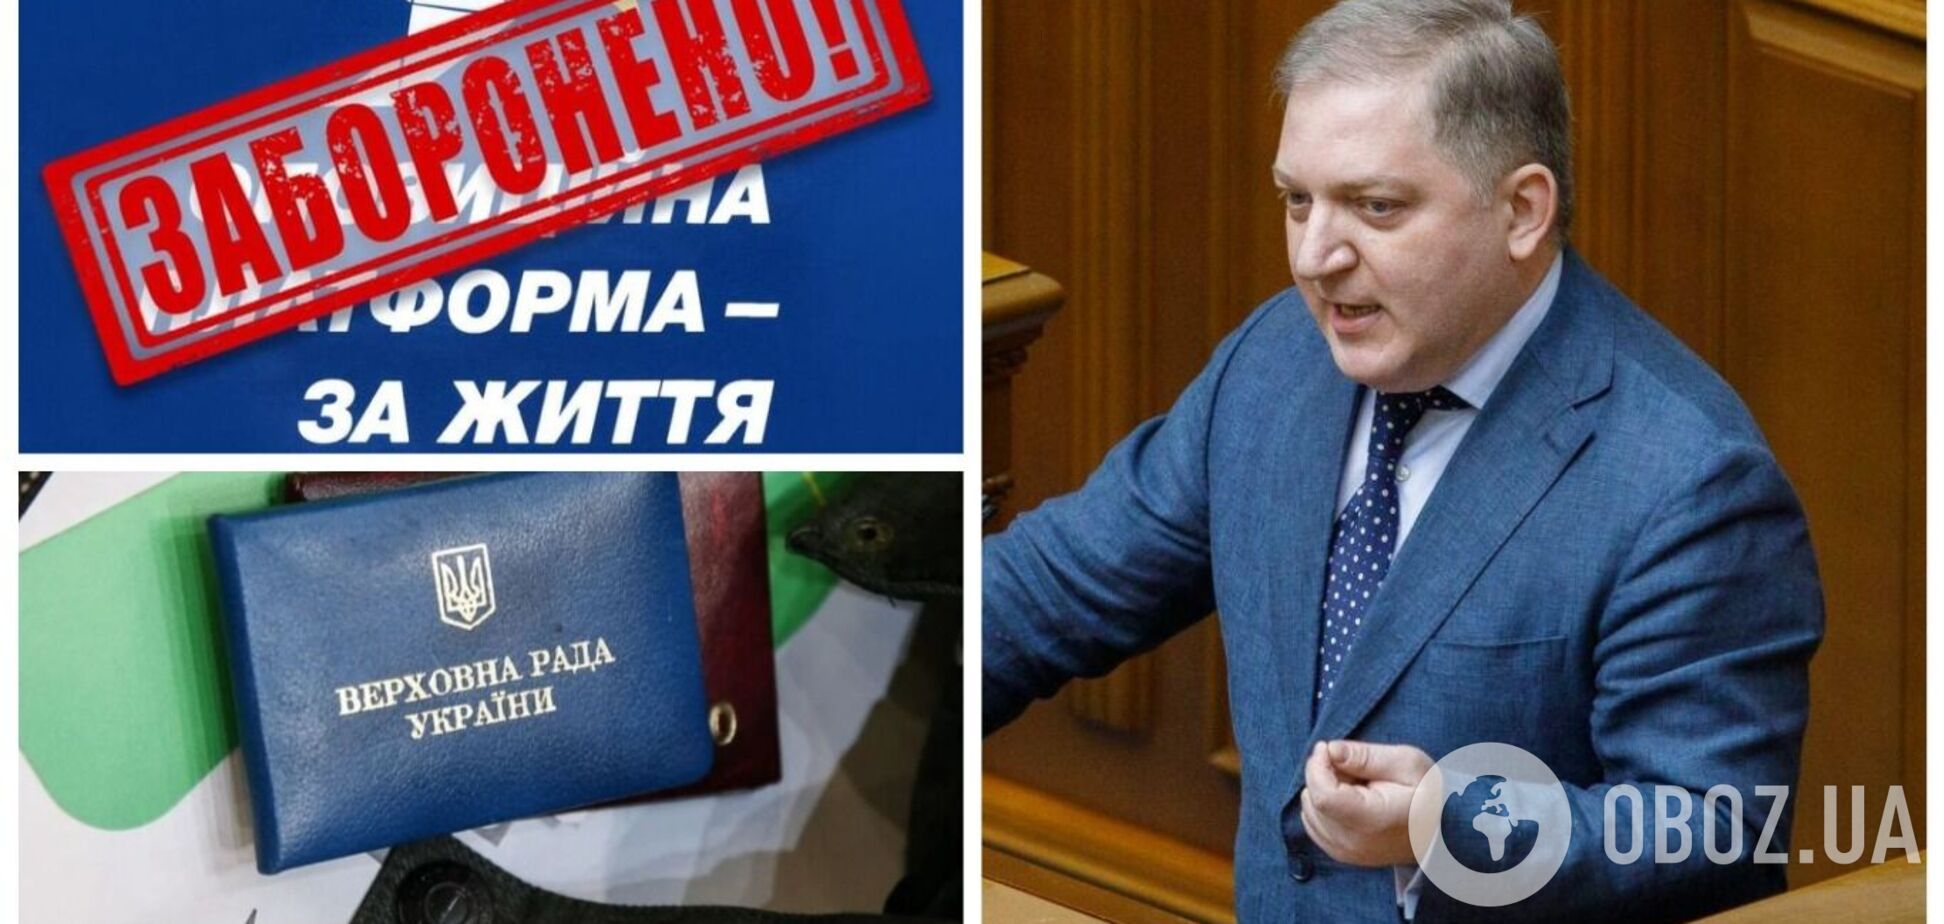 Нардеп от ОПЗЖ Волошин подал заявление о сложении мандата: ранее ему объявили подозрение о госизмене. Фото